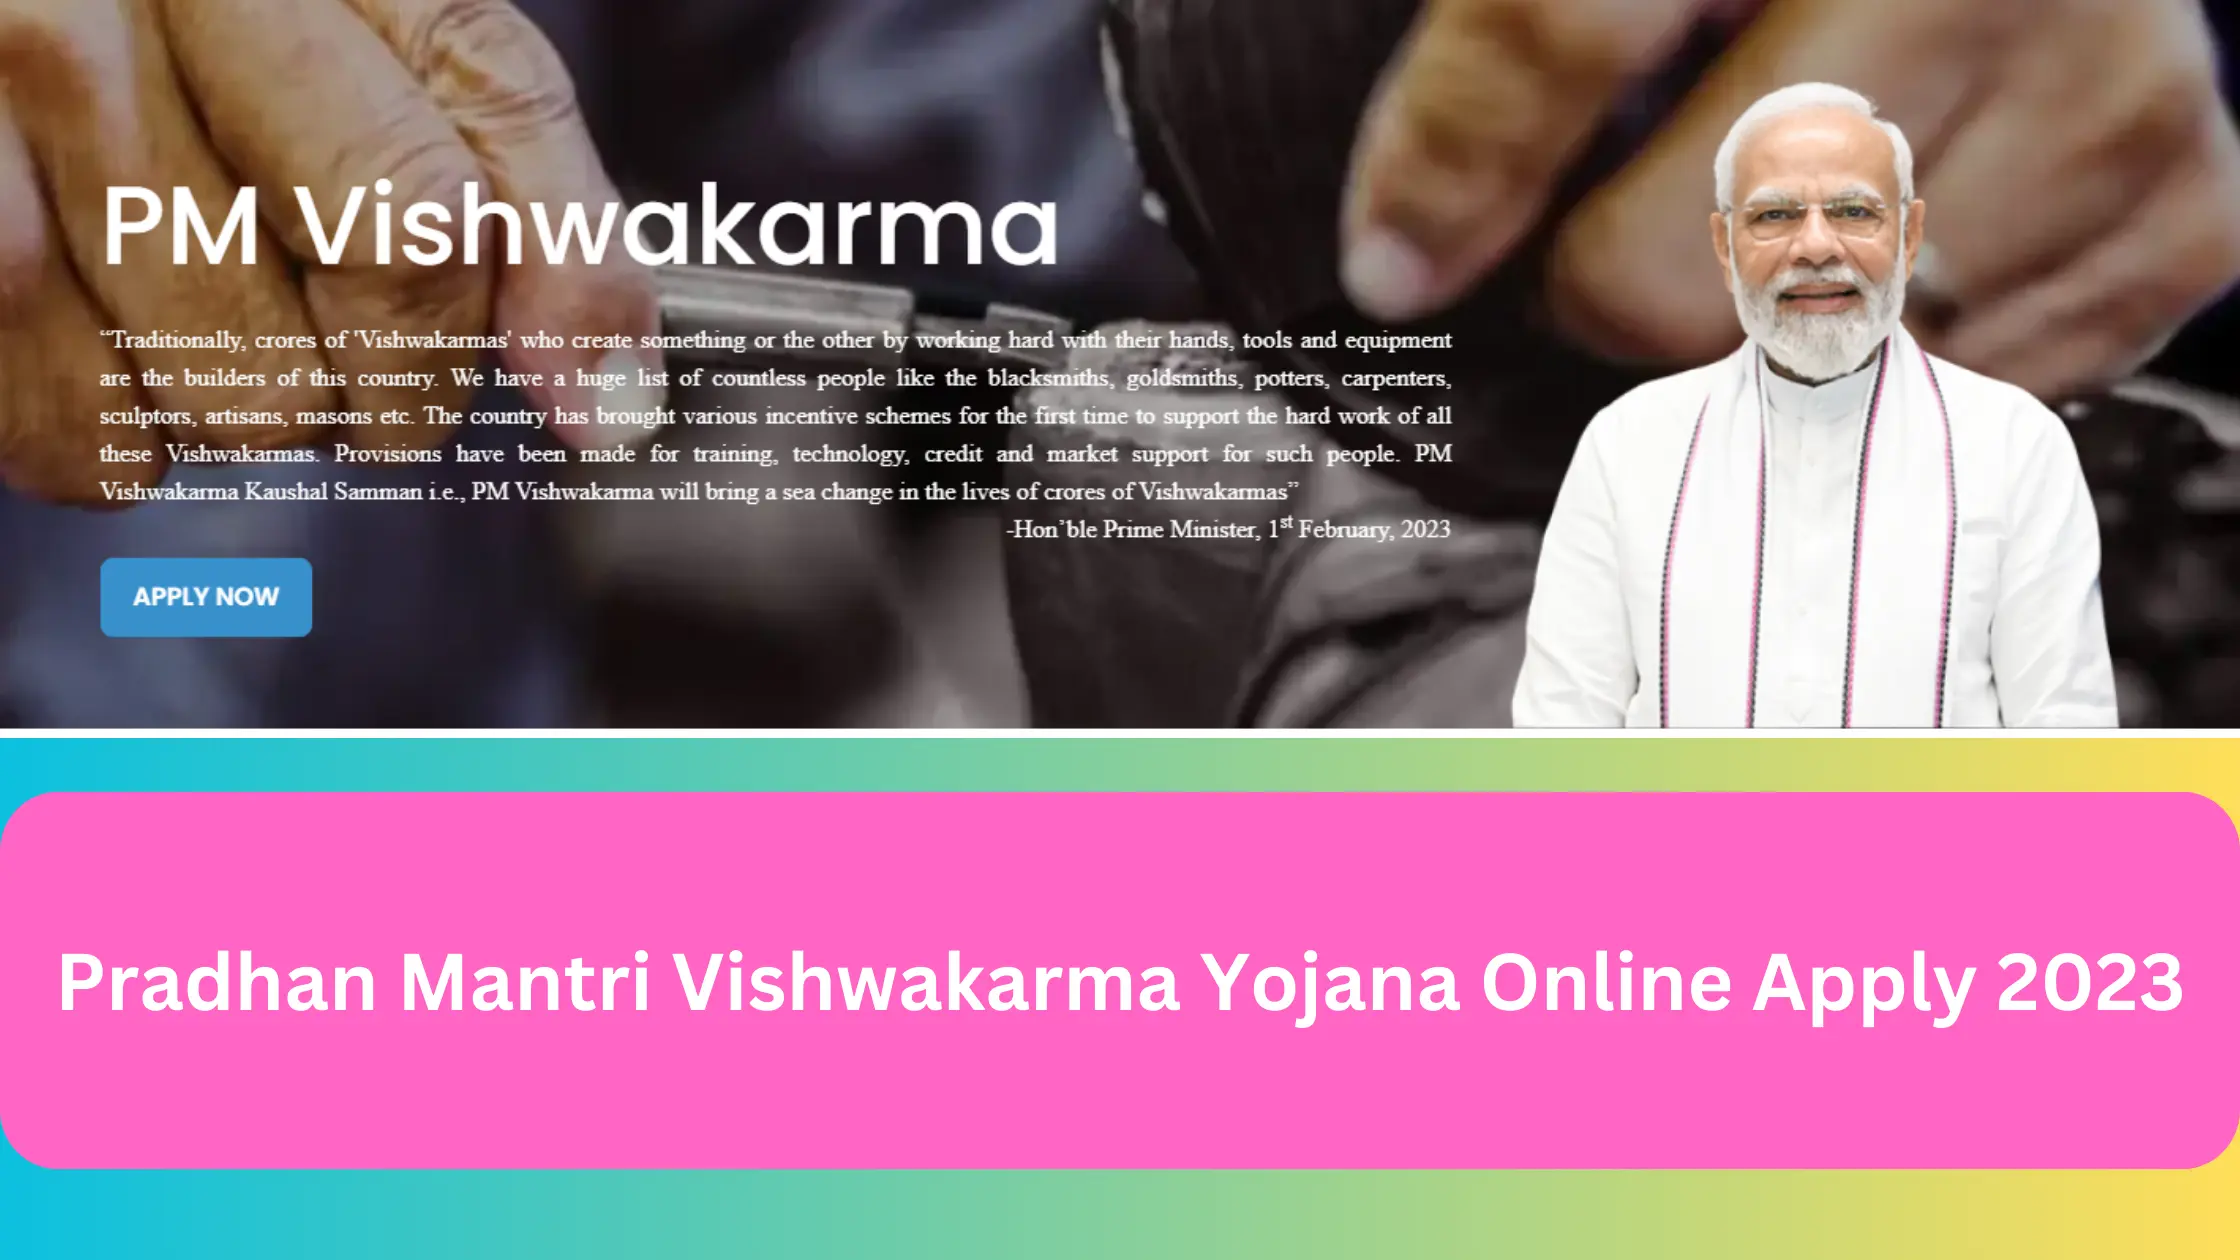 Pradhan Mantri Vishwakarma Yojana Online Apply 2023